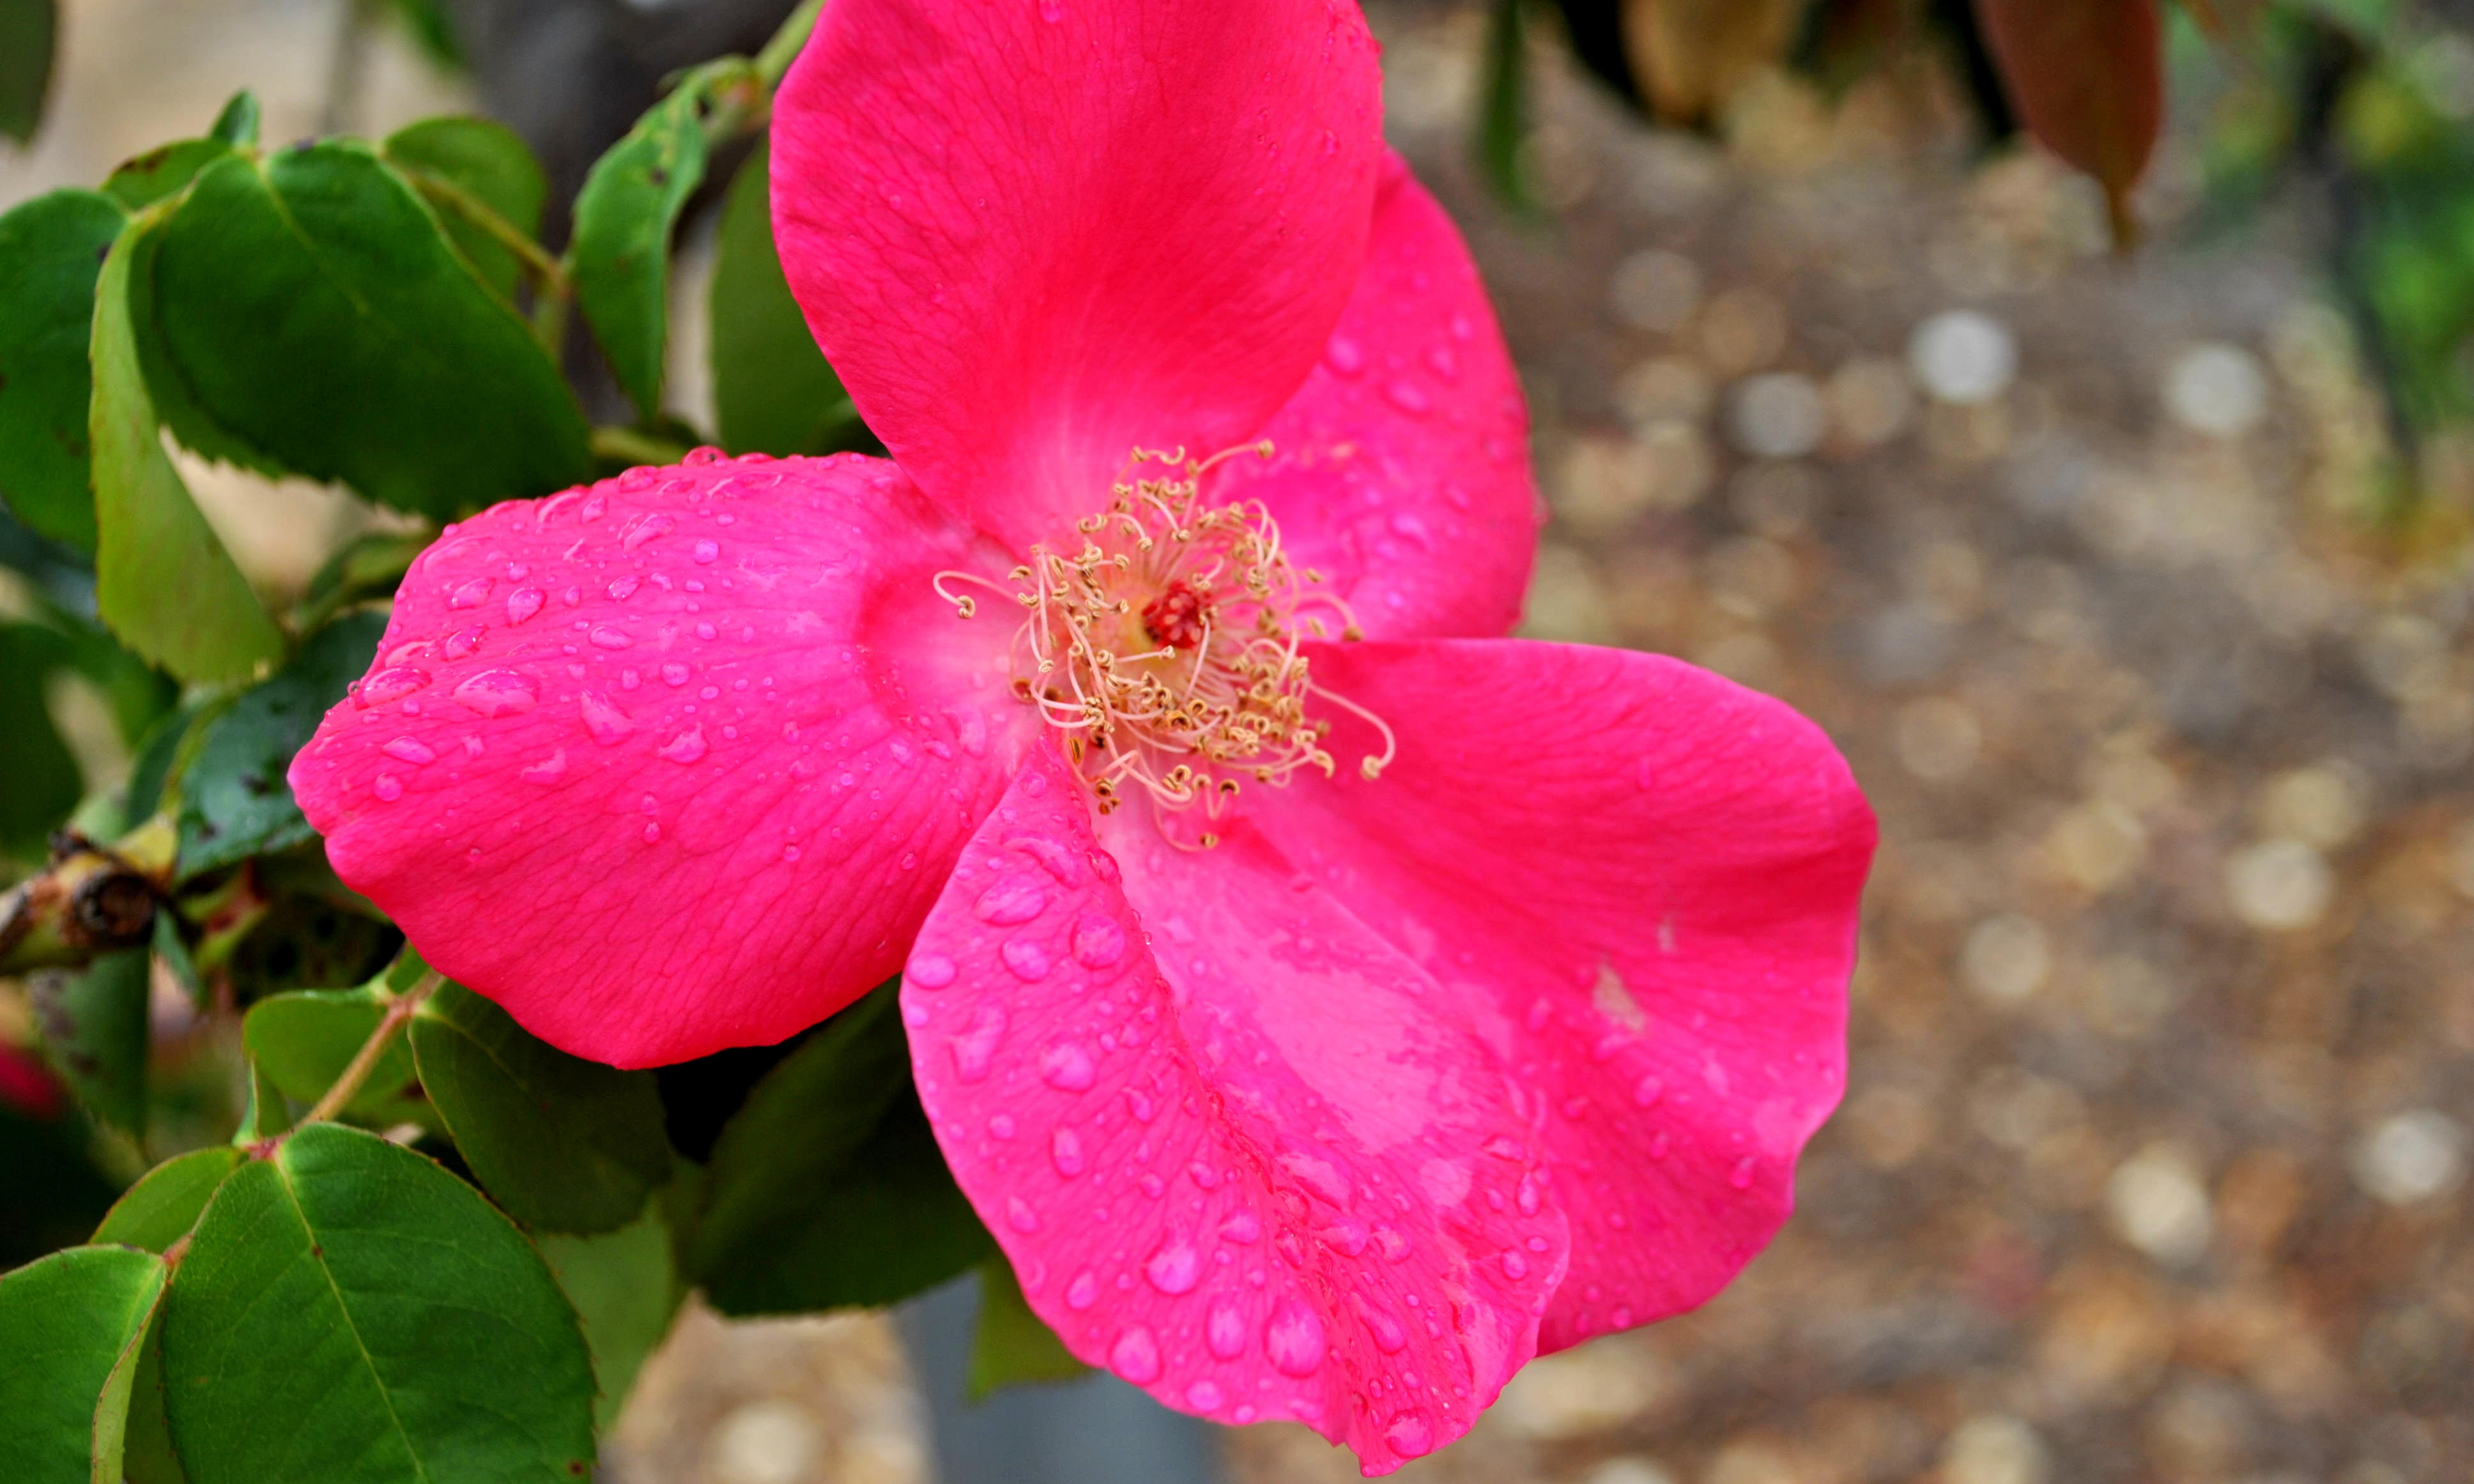 Rose closeup photo